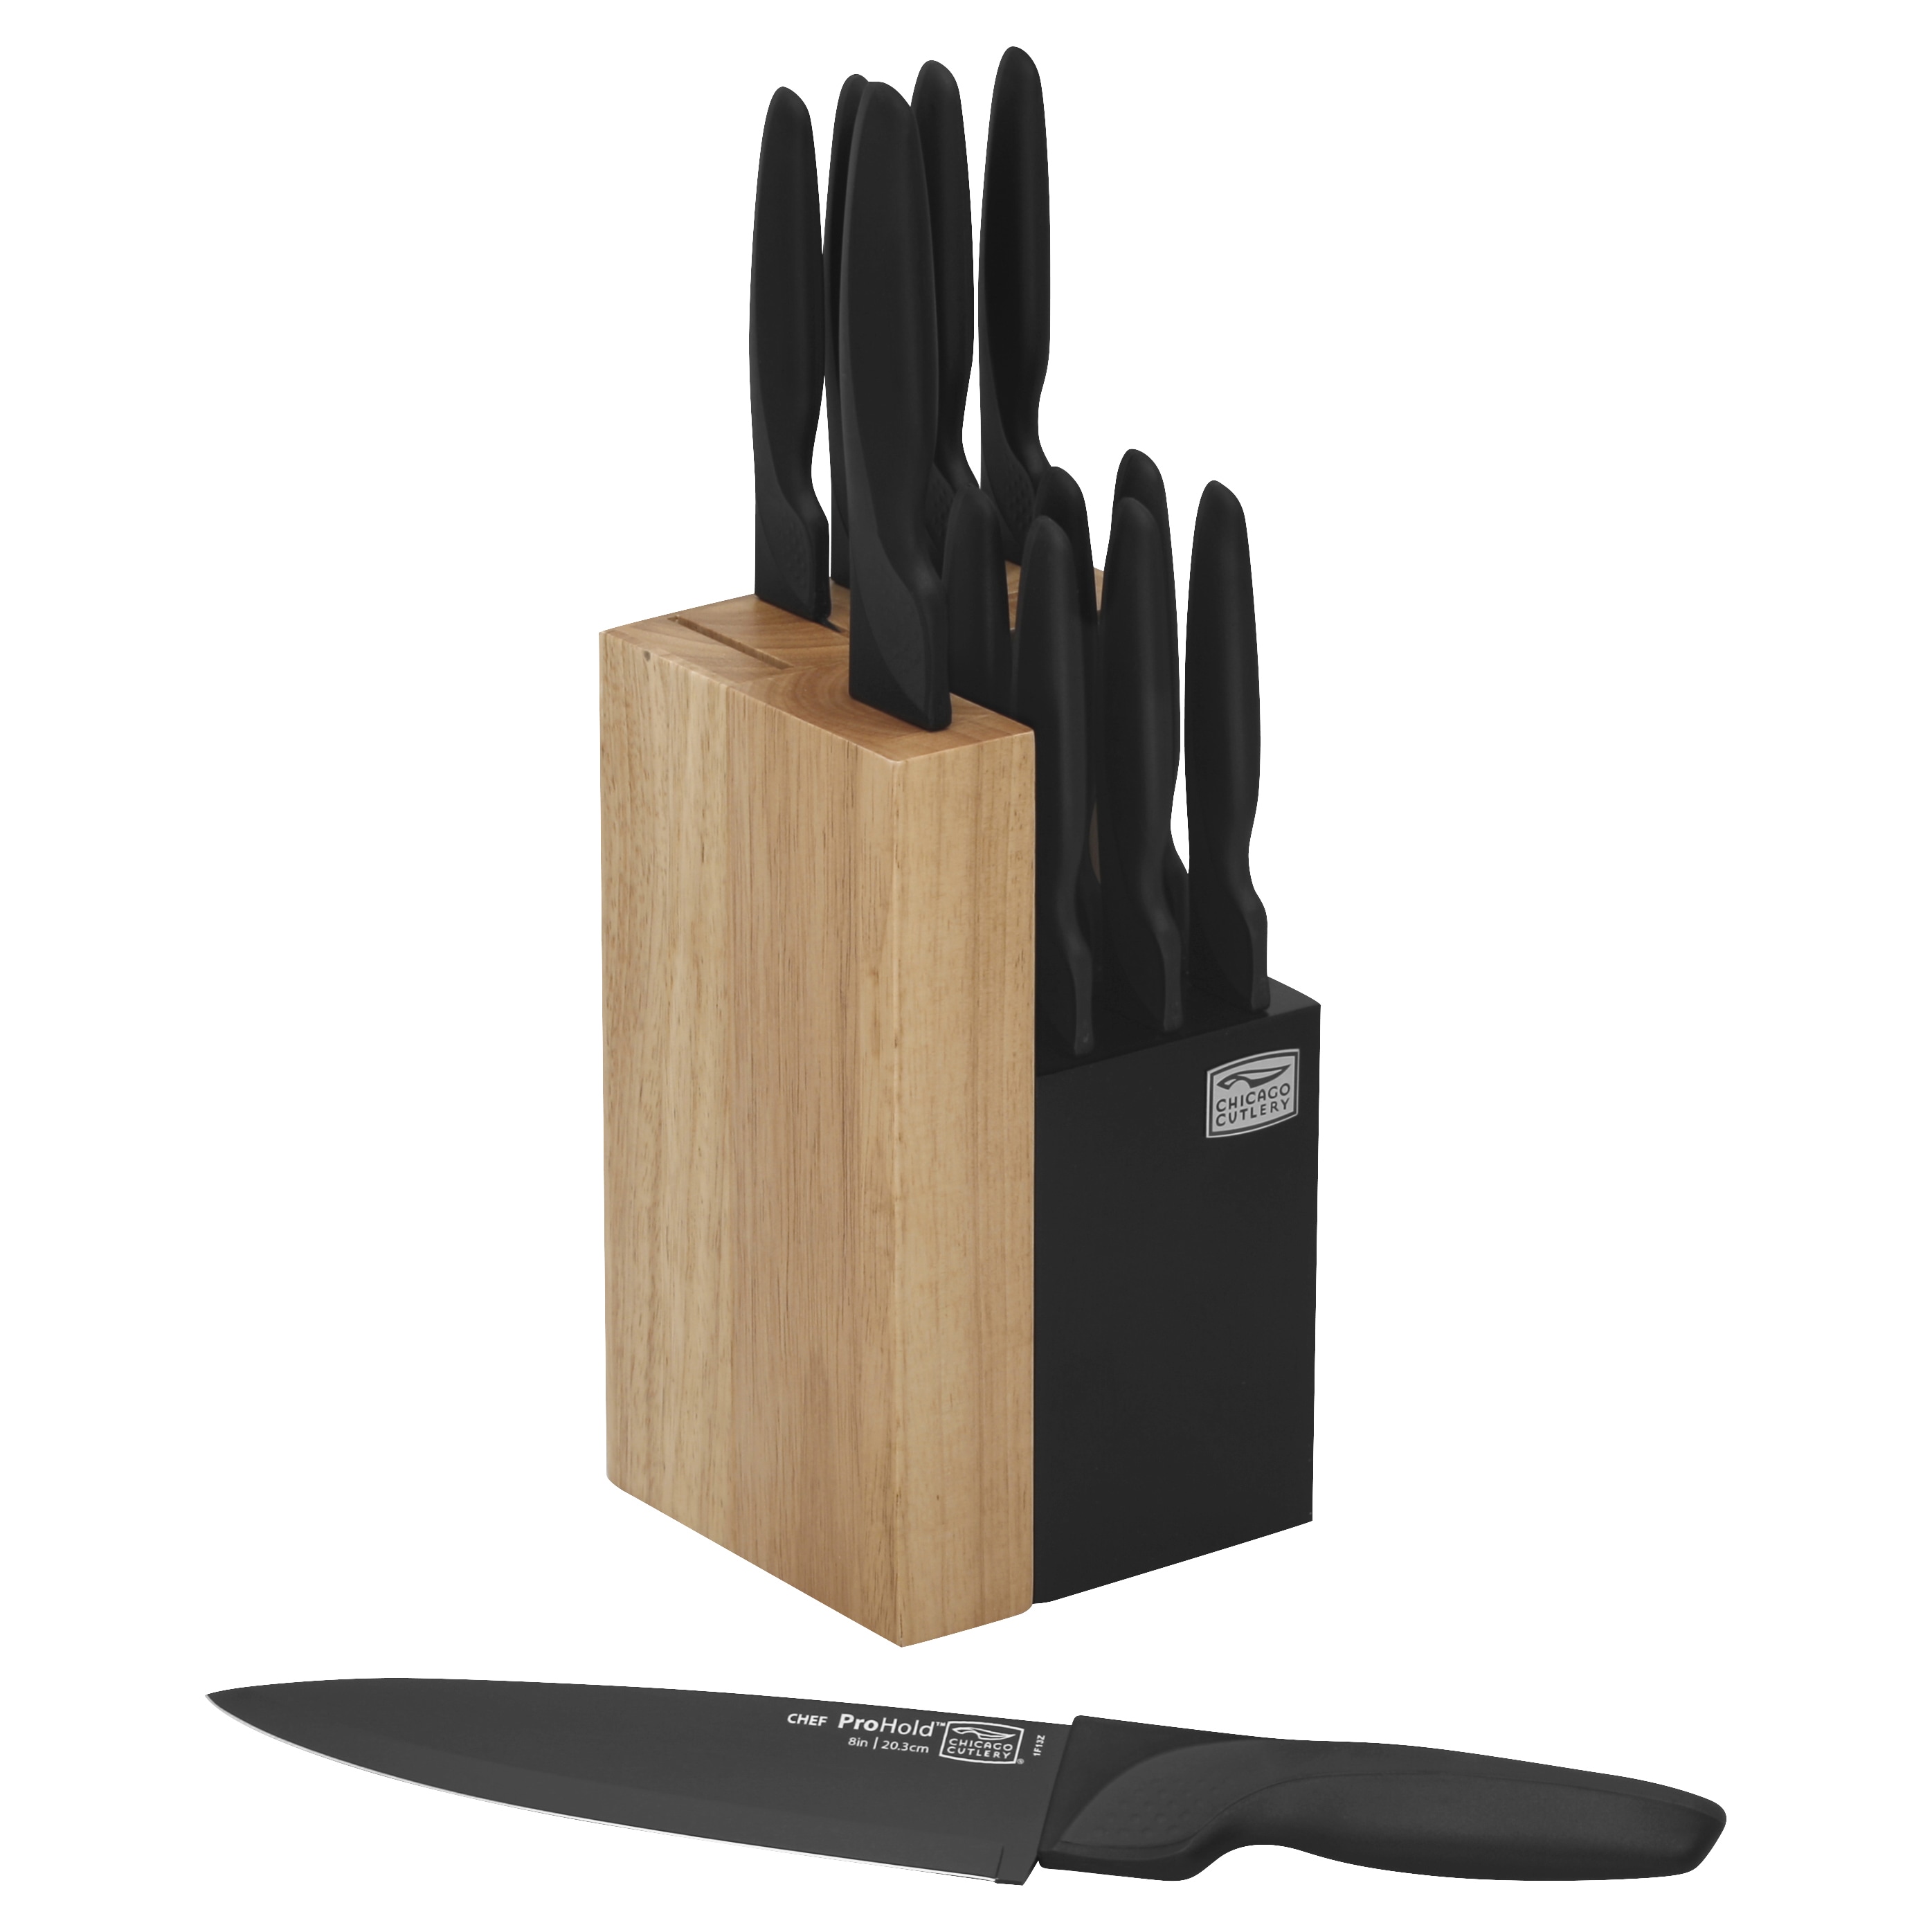 Chicago Cutlery Essentials 15-piece Knife Set - Bed Bath & Beyond